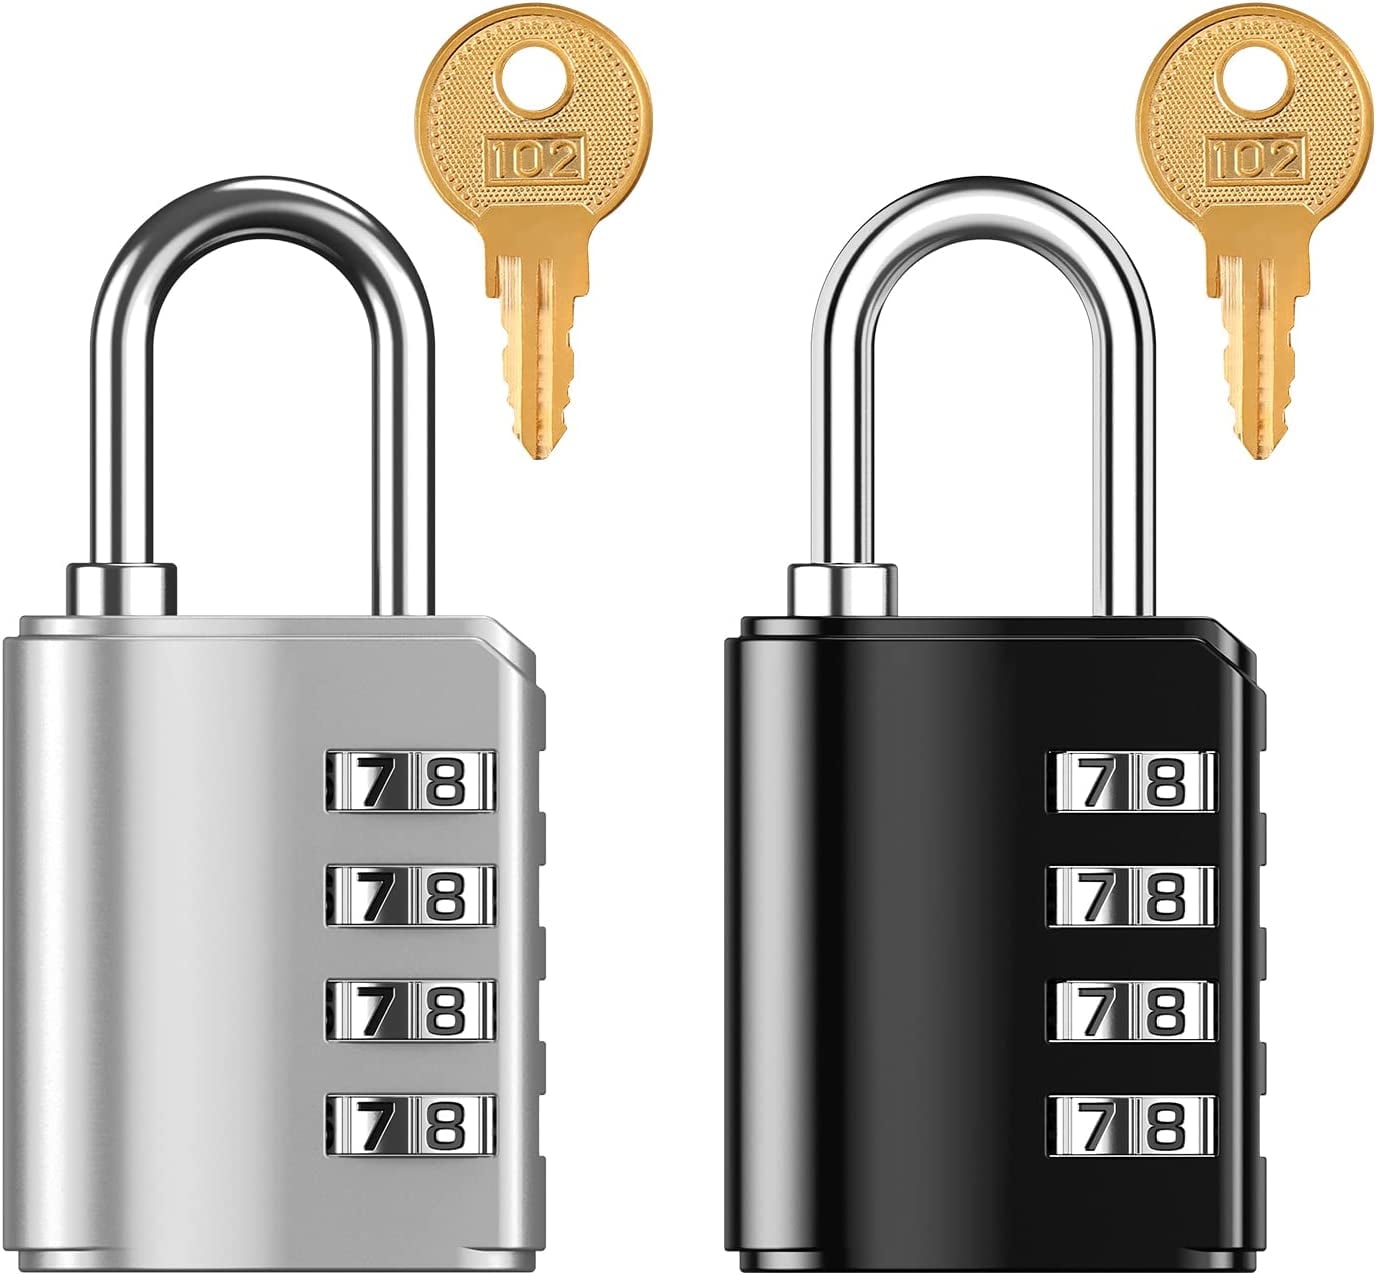 Combination Lock, Waterproof 4 Digit Combination Padlock with Keys, Resettable Gate Lock for Locker, Gym, Fence, Case, School & Employee Locker